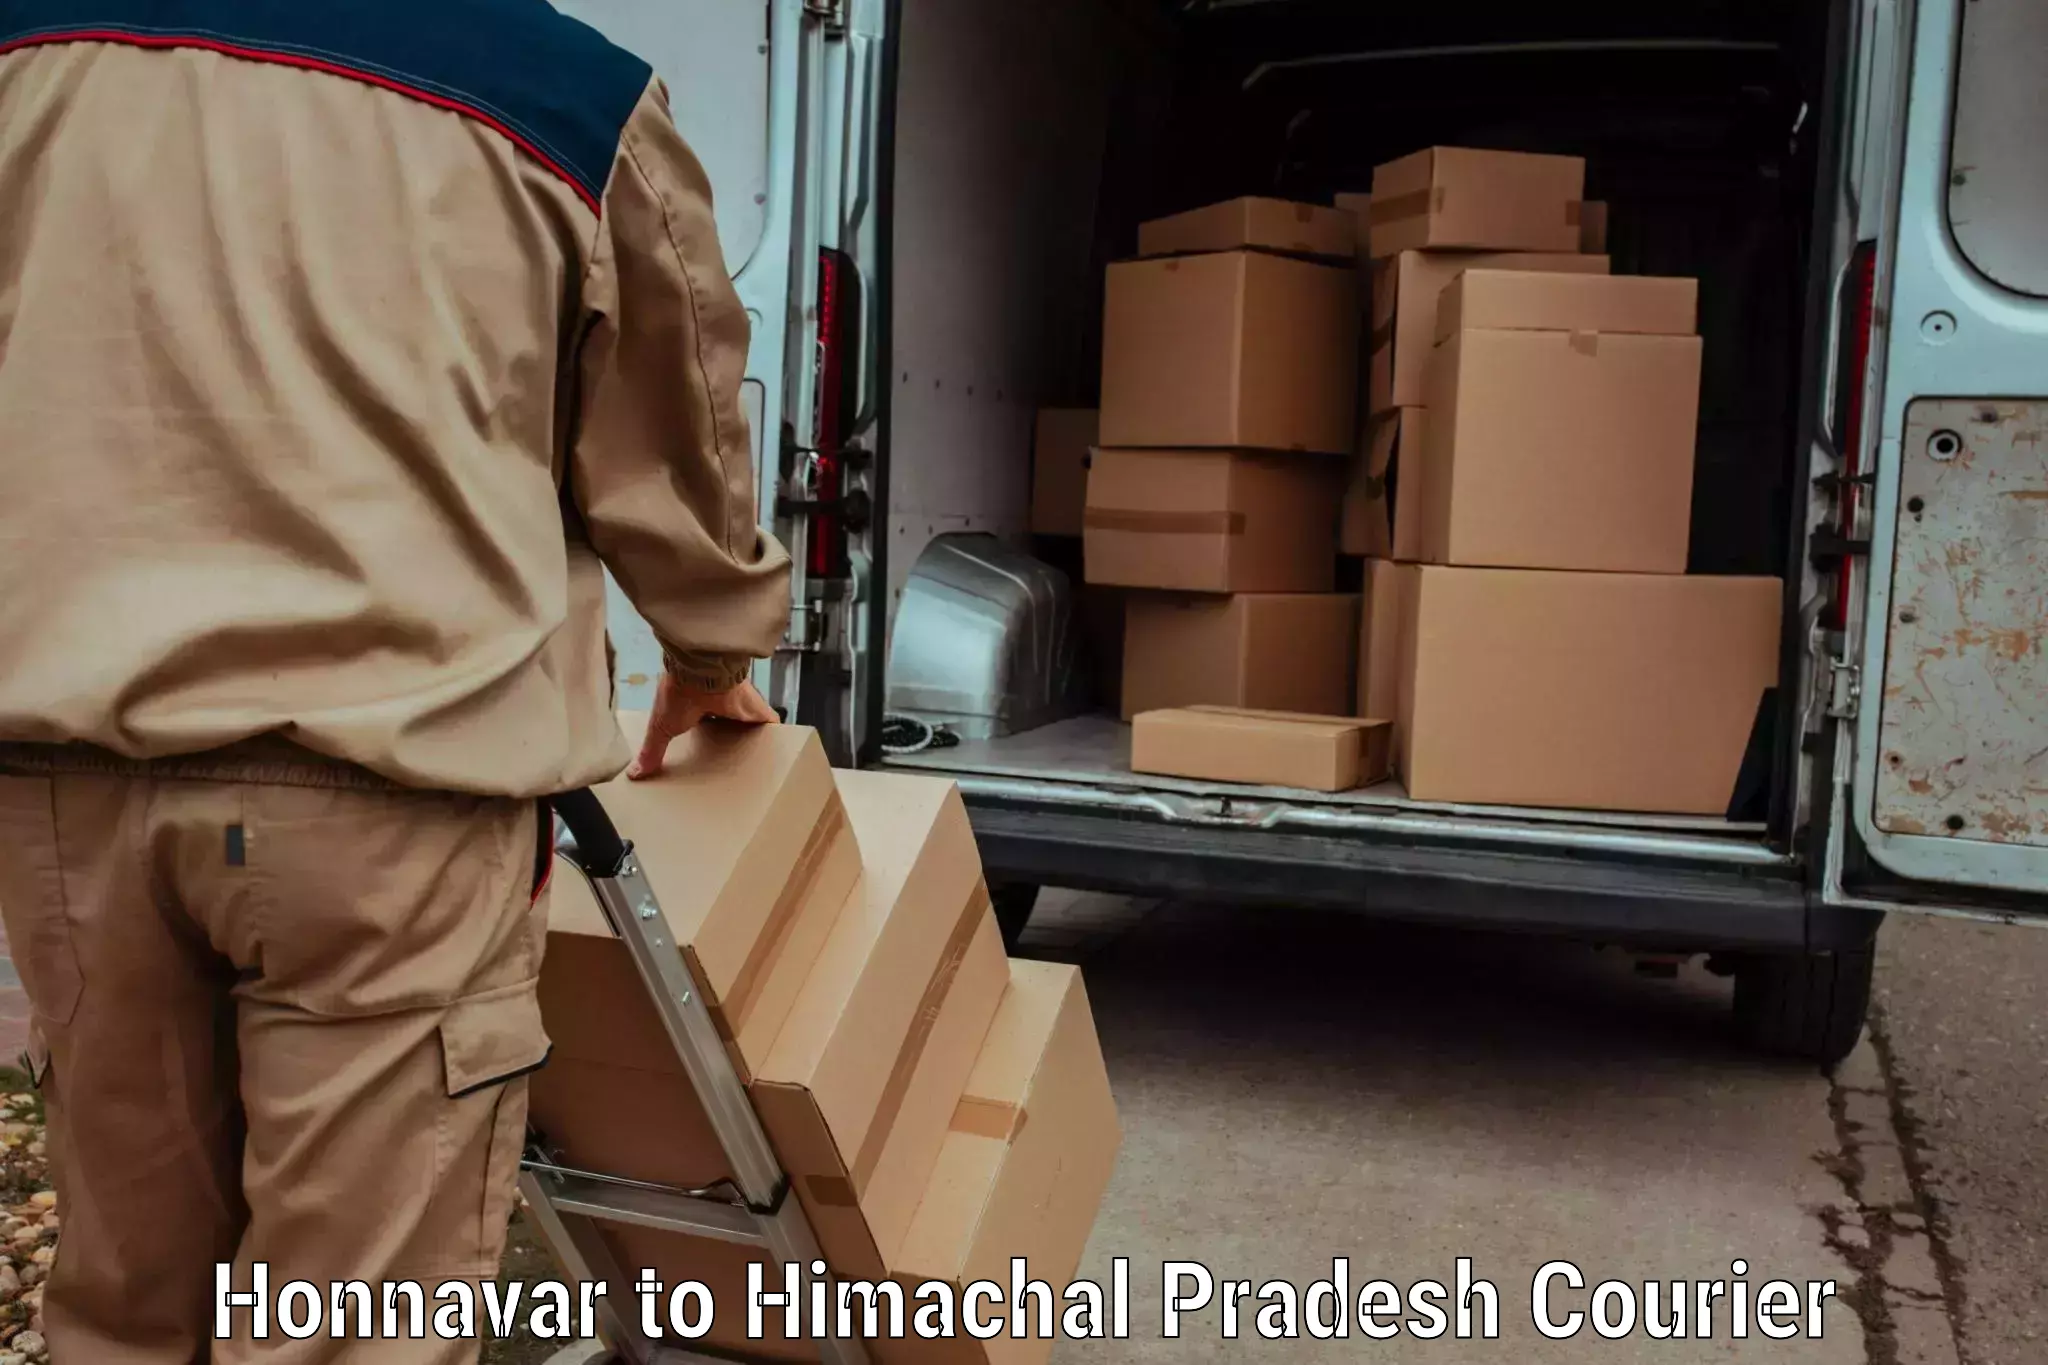 Door-to-door baggage service Honnavar to Himachal Pradesh